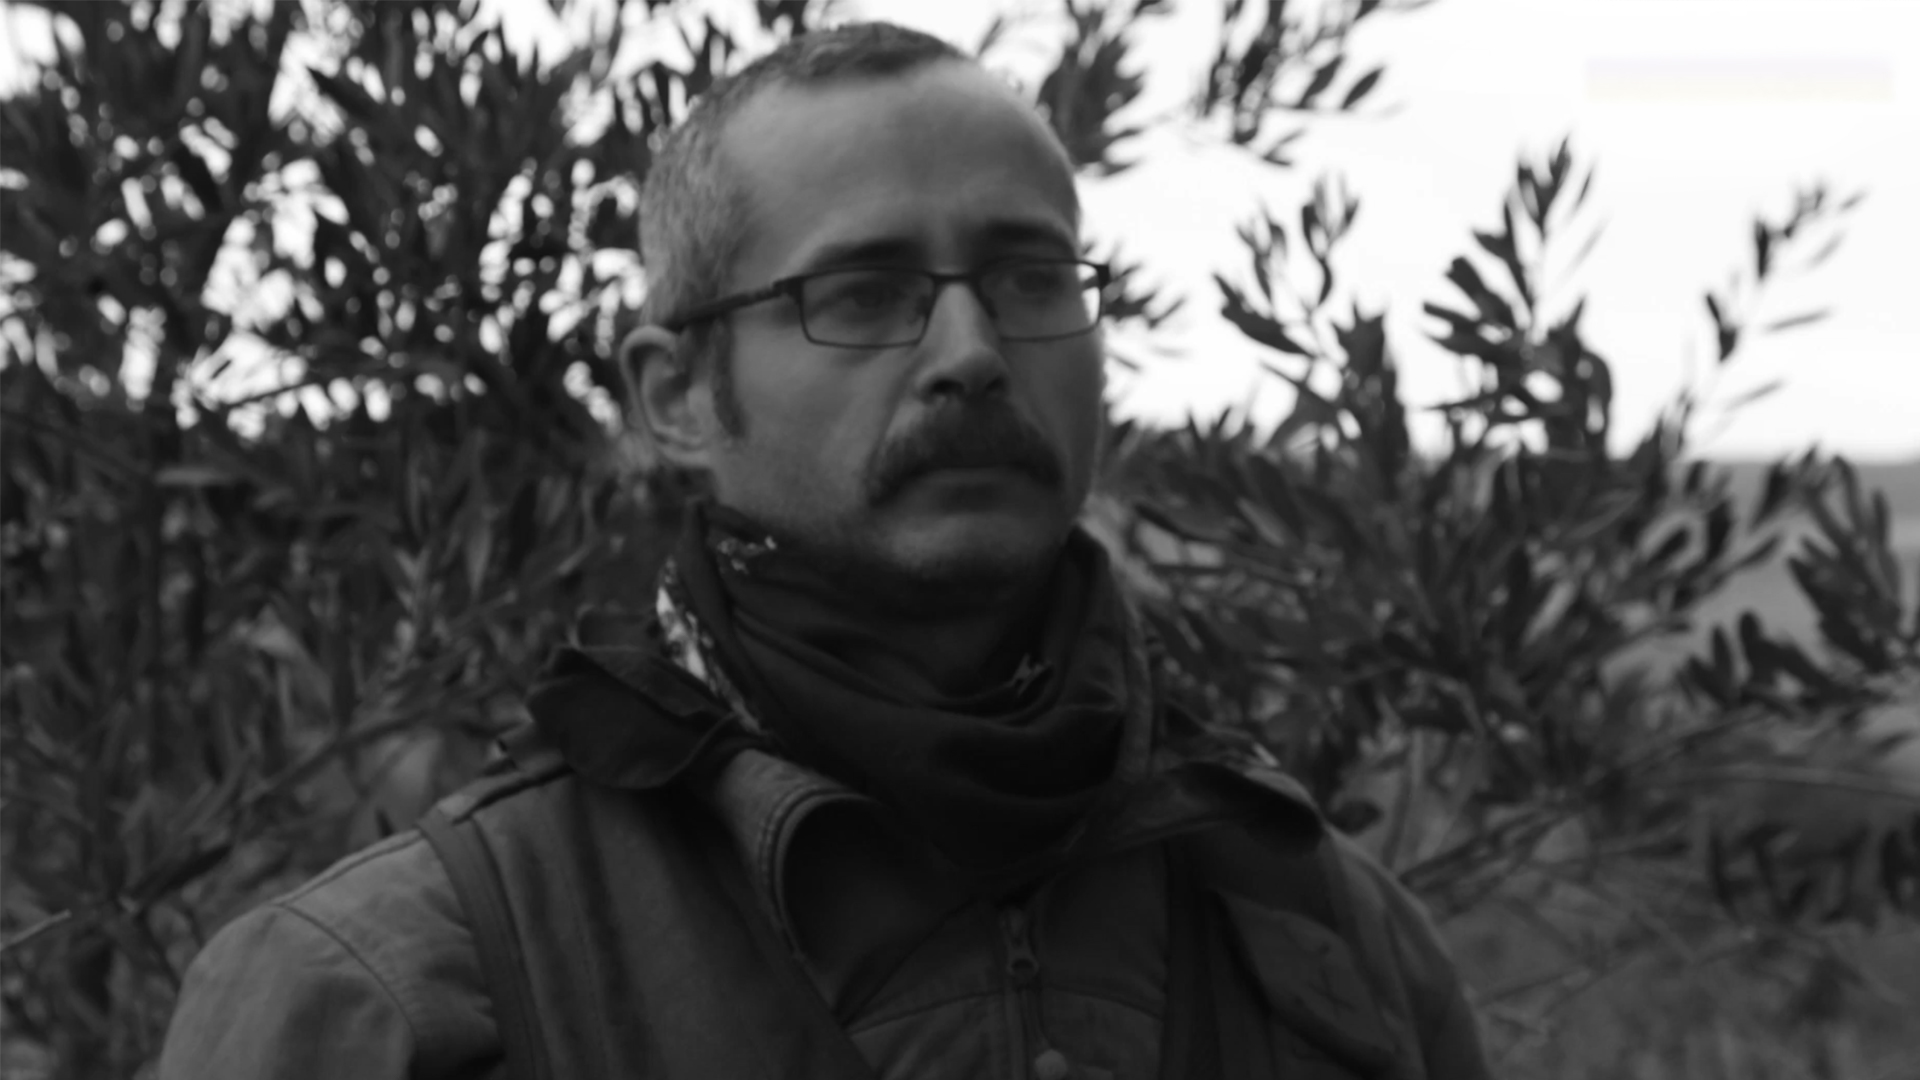 Αδελφός Γάλλου εθελοντή που σκοτώθηκε στη Βόρεια Συρία: Ο αδελφός μου πέθανε για καλό σκοπό